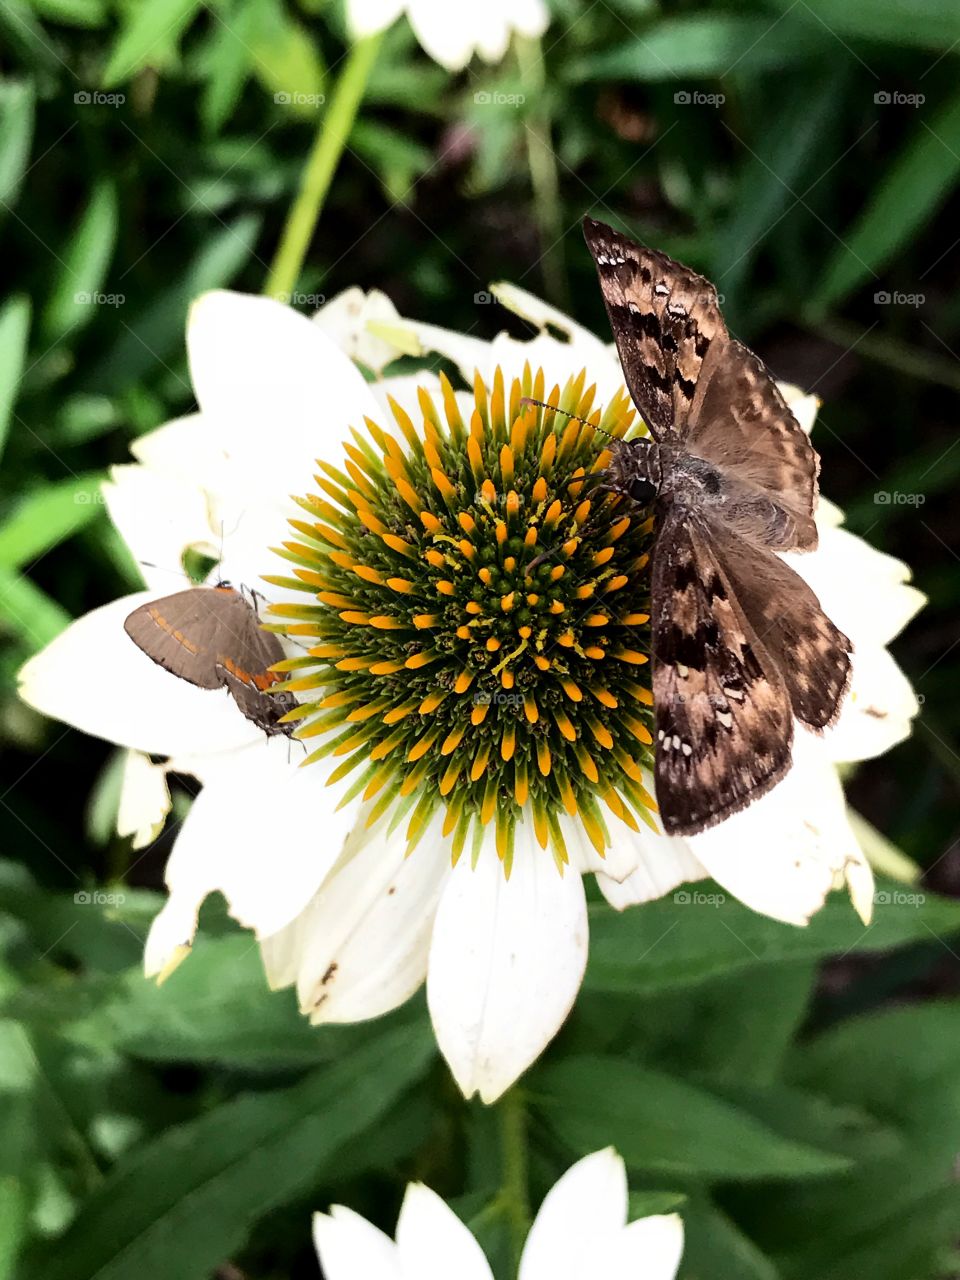 Butterfly 